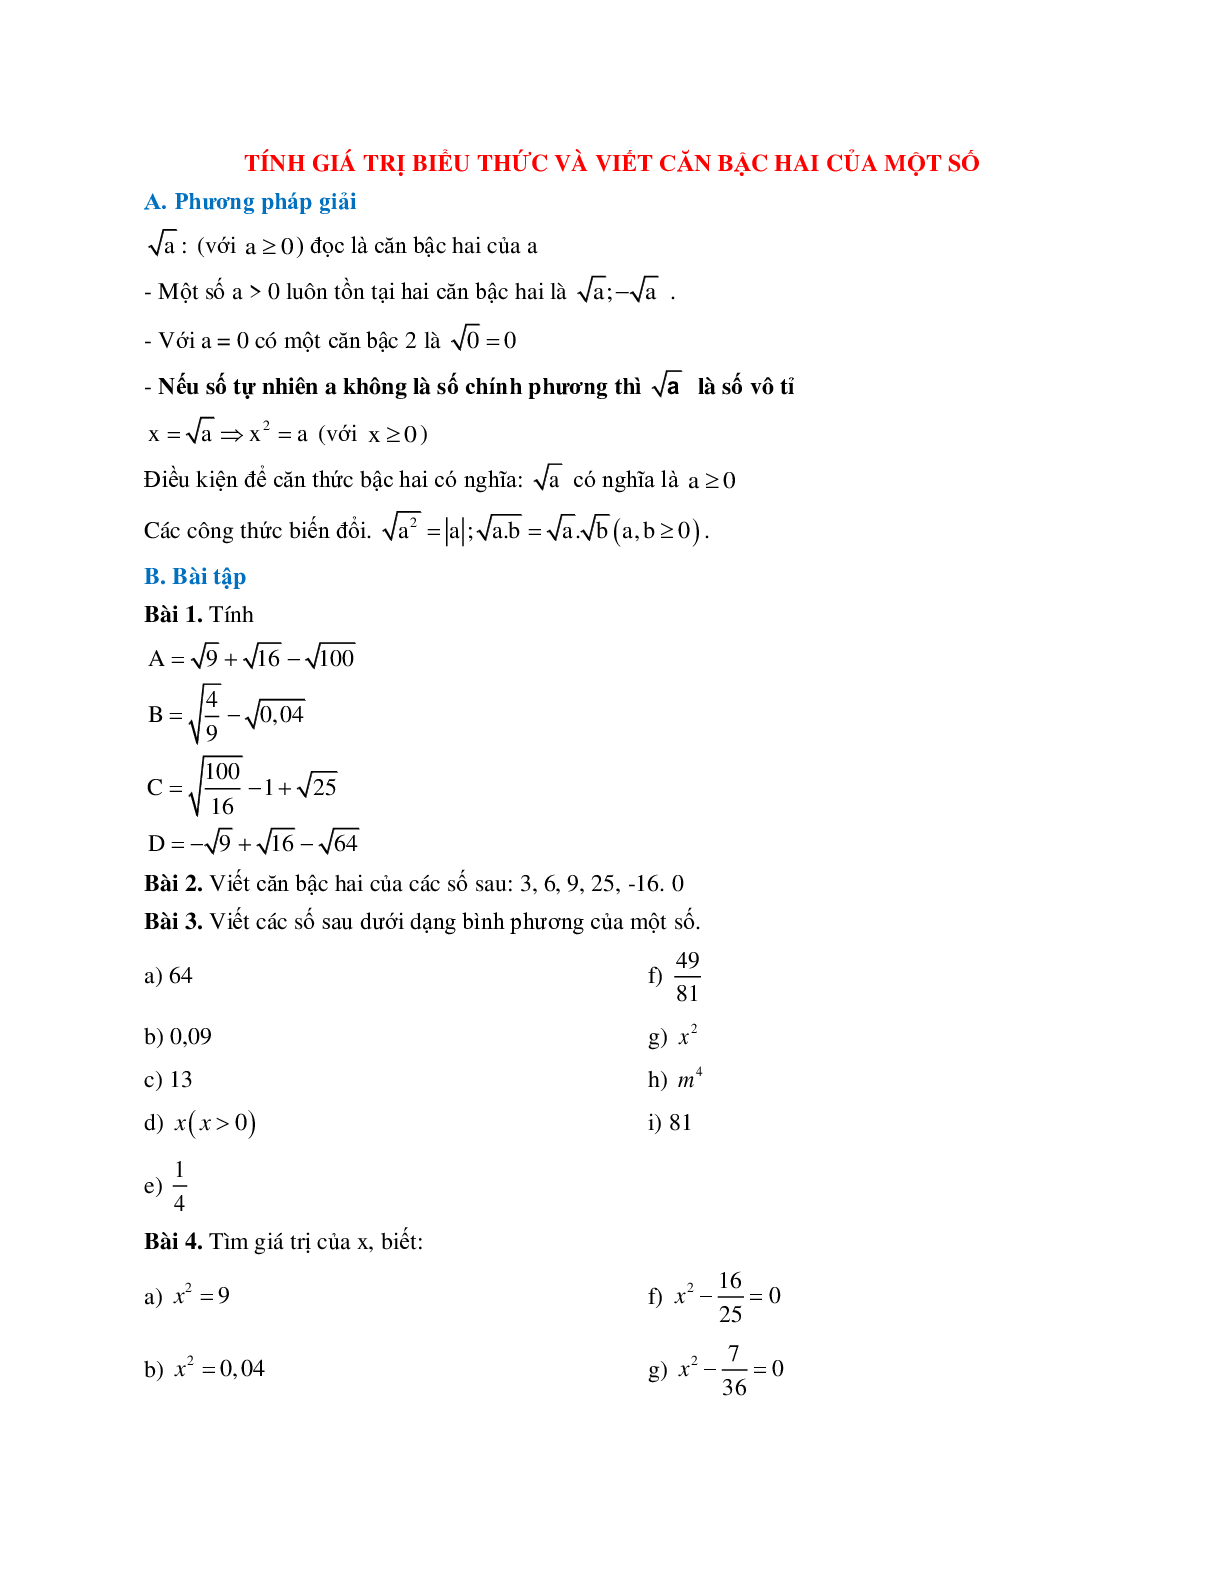 Cách giải Tính giá trị biểu thức và viết căn bậc hai của một số (trang 1)